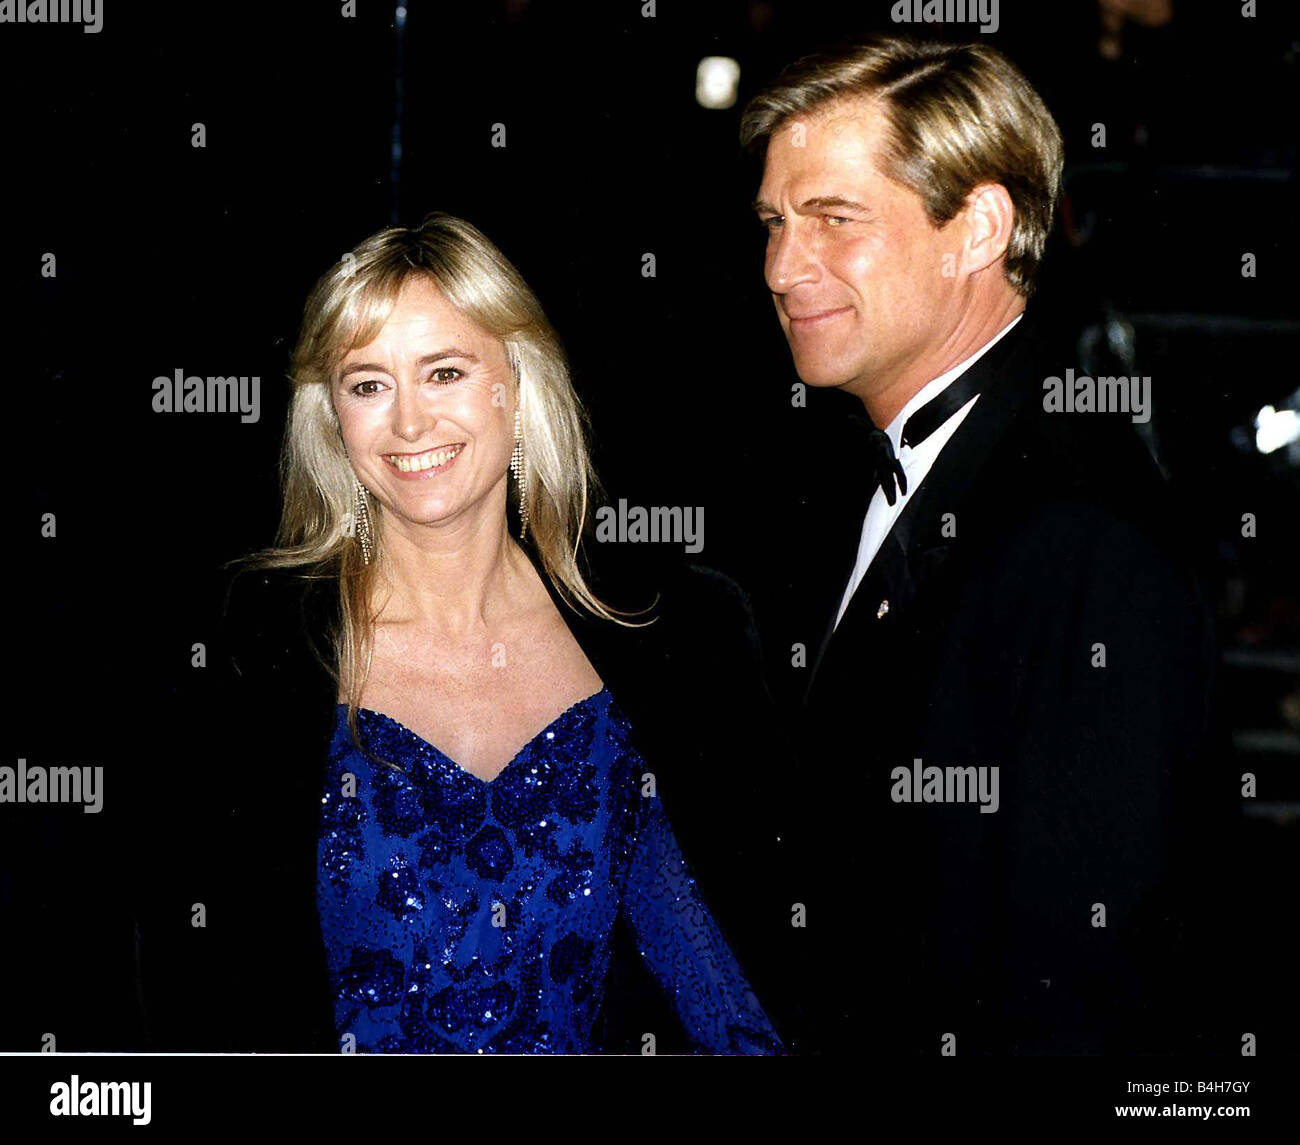 Susan George Actress with husband Stock Photo - Alamy